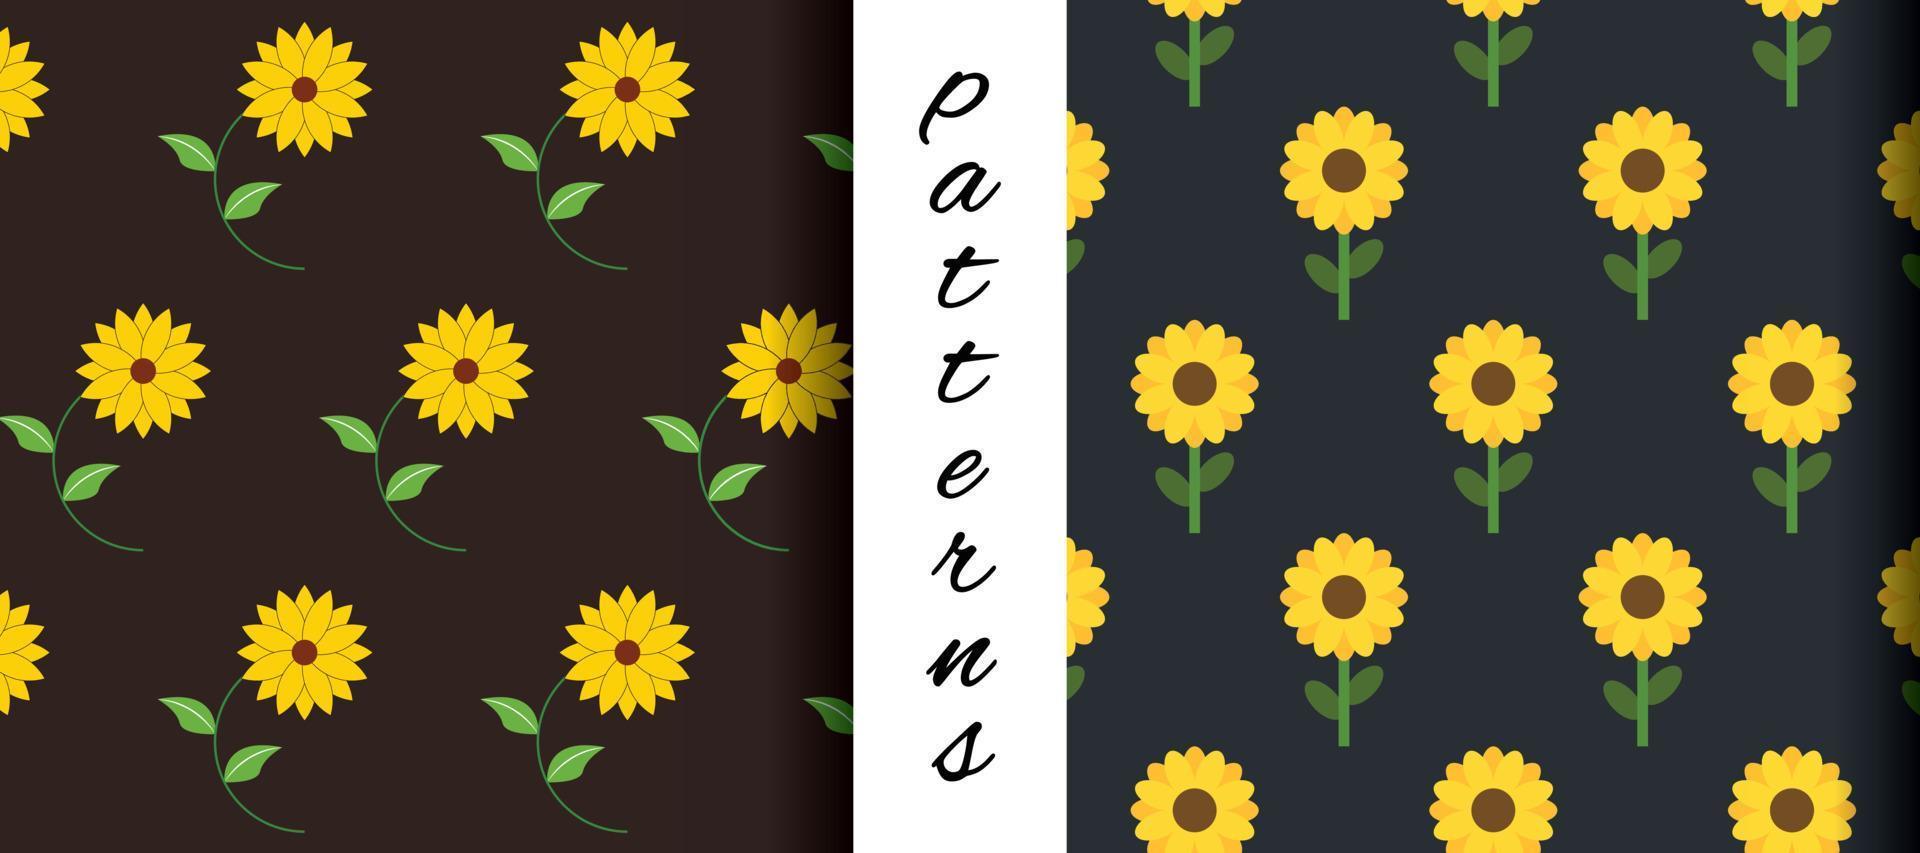 Sunflower Elegant Seamless Pattern Design in Vector Art